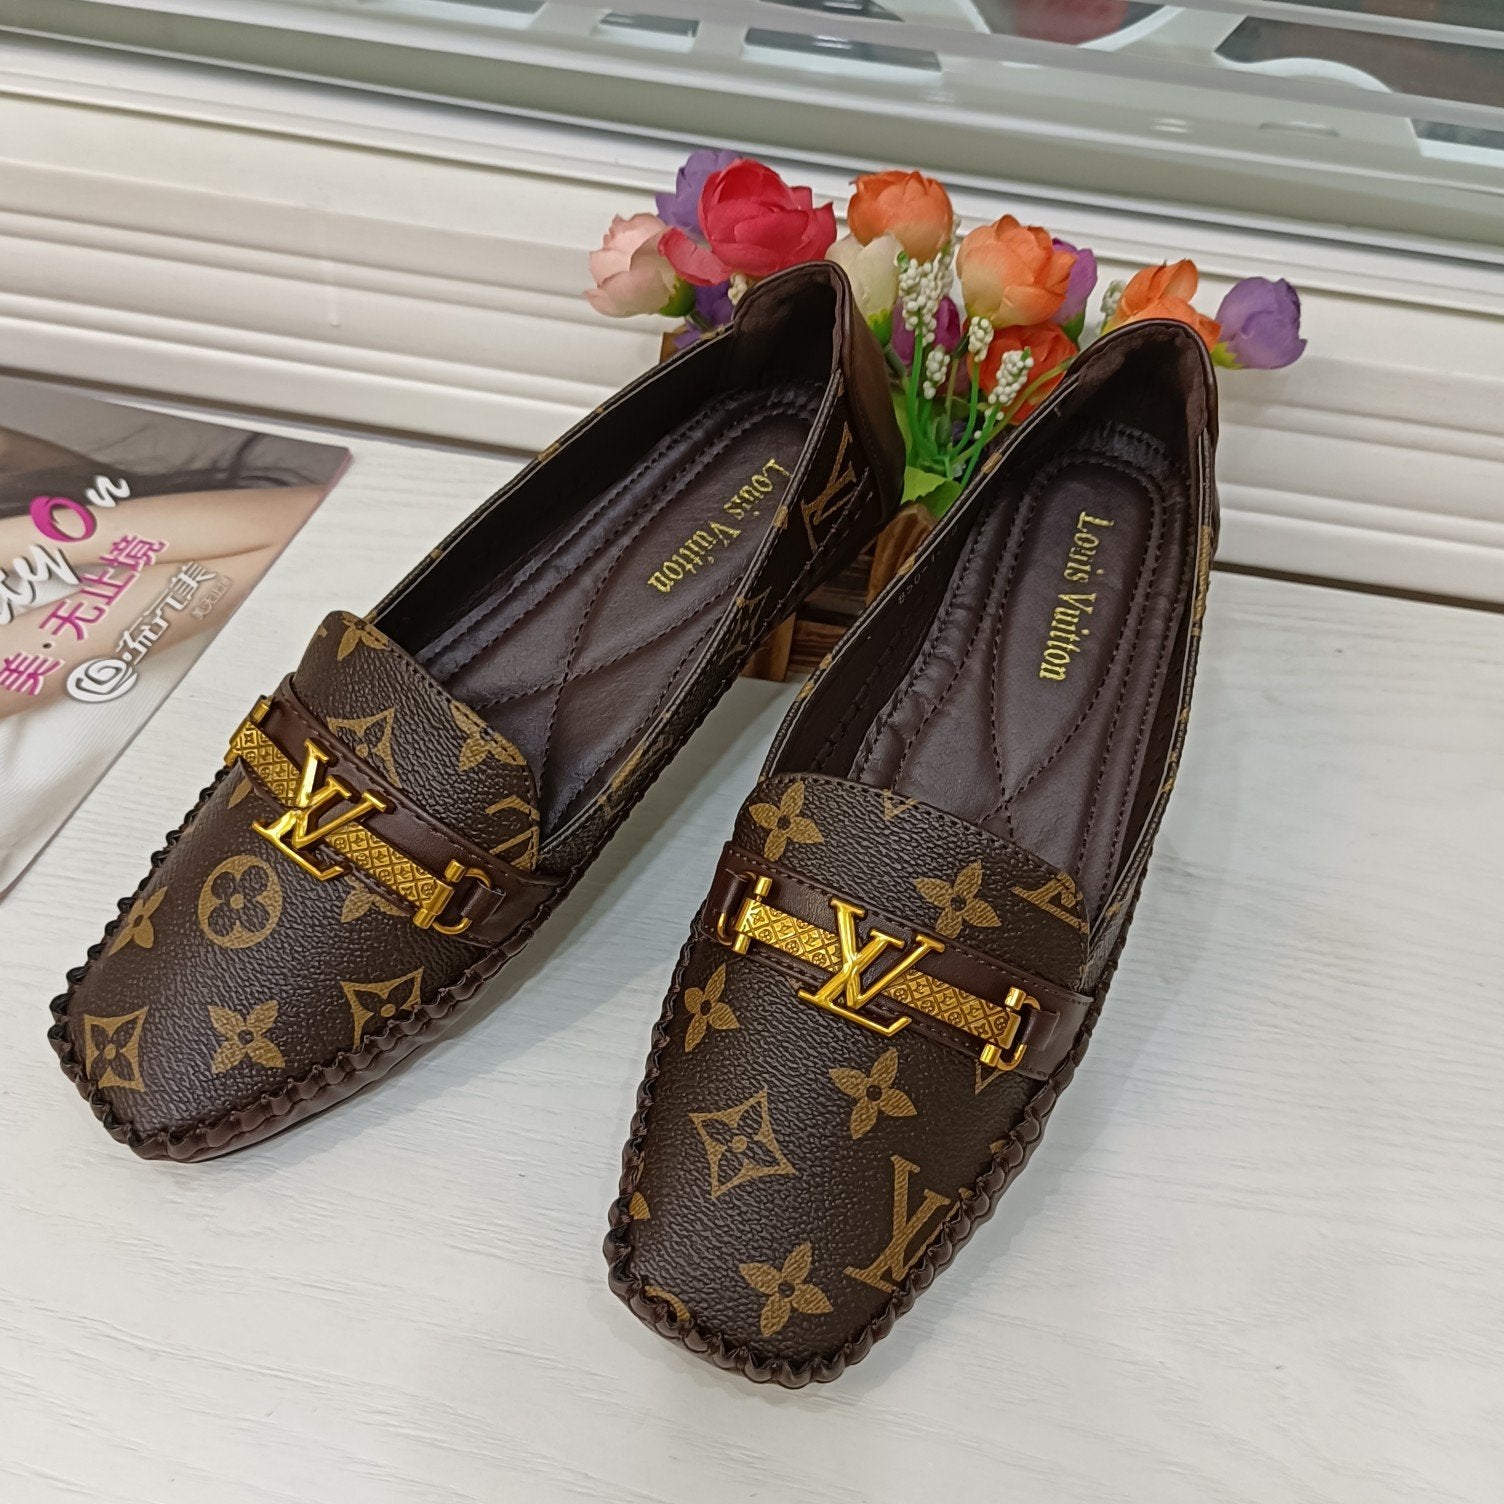 LV Louis Vuitton Fashion Ladies Gold Buckle Sandals Leather Shoe